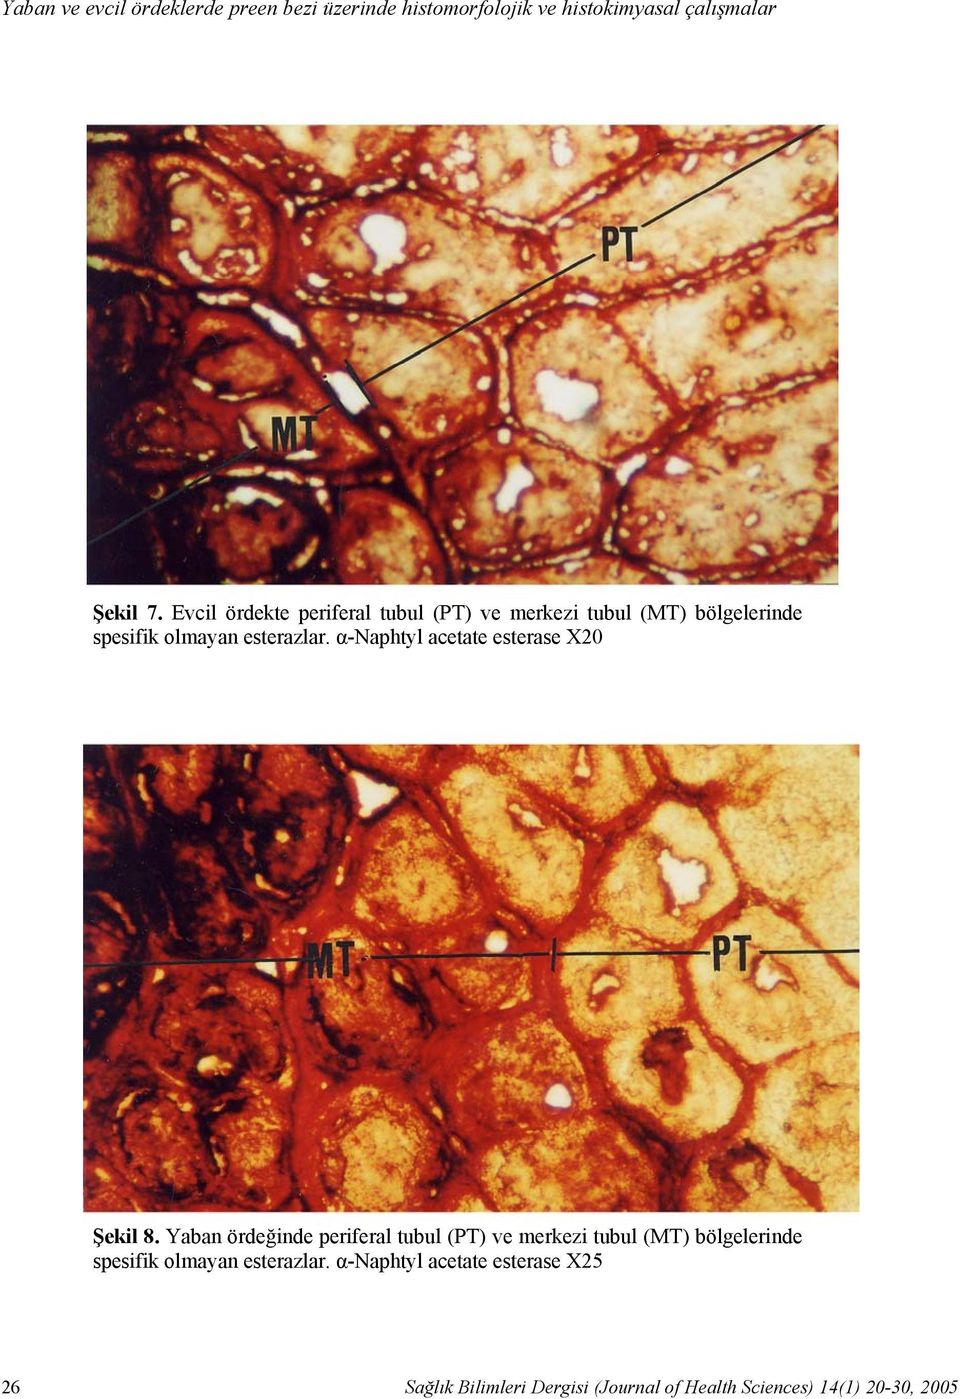 Evcil ördekte periferal tubul (PT) ve merkezi tubul (MT) bölgelerinde spesifik olmayan